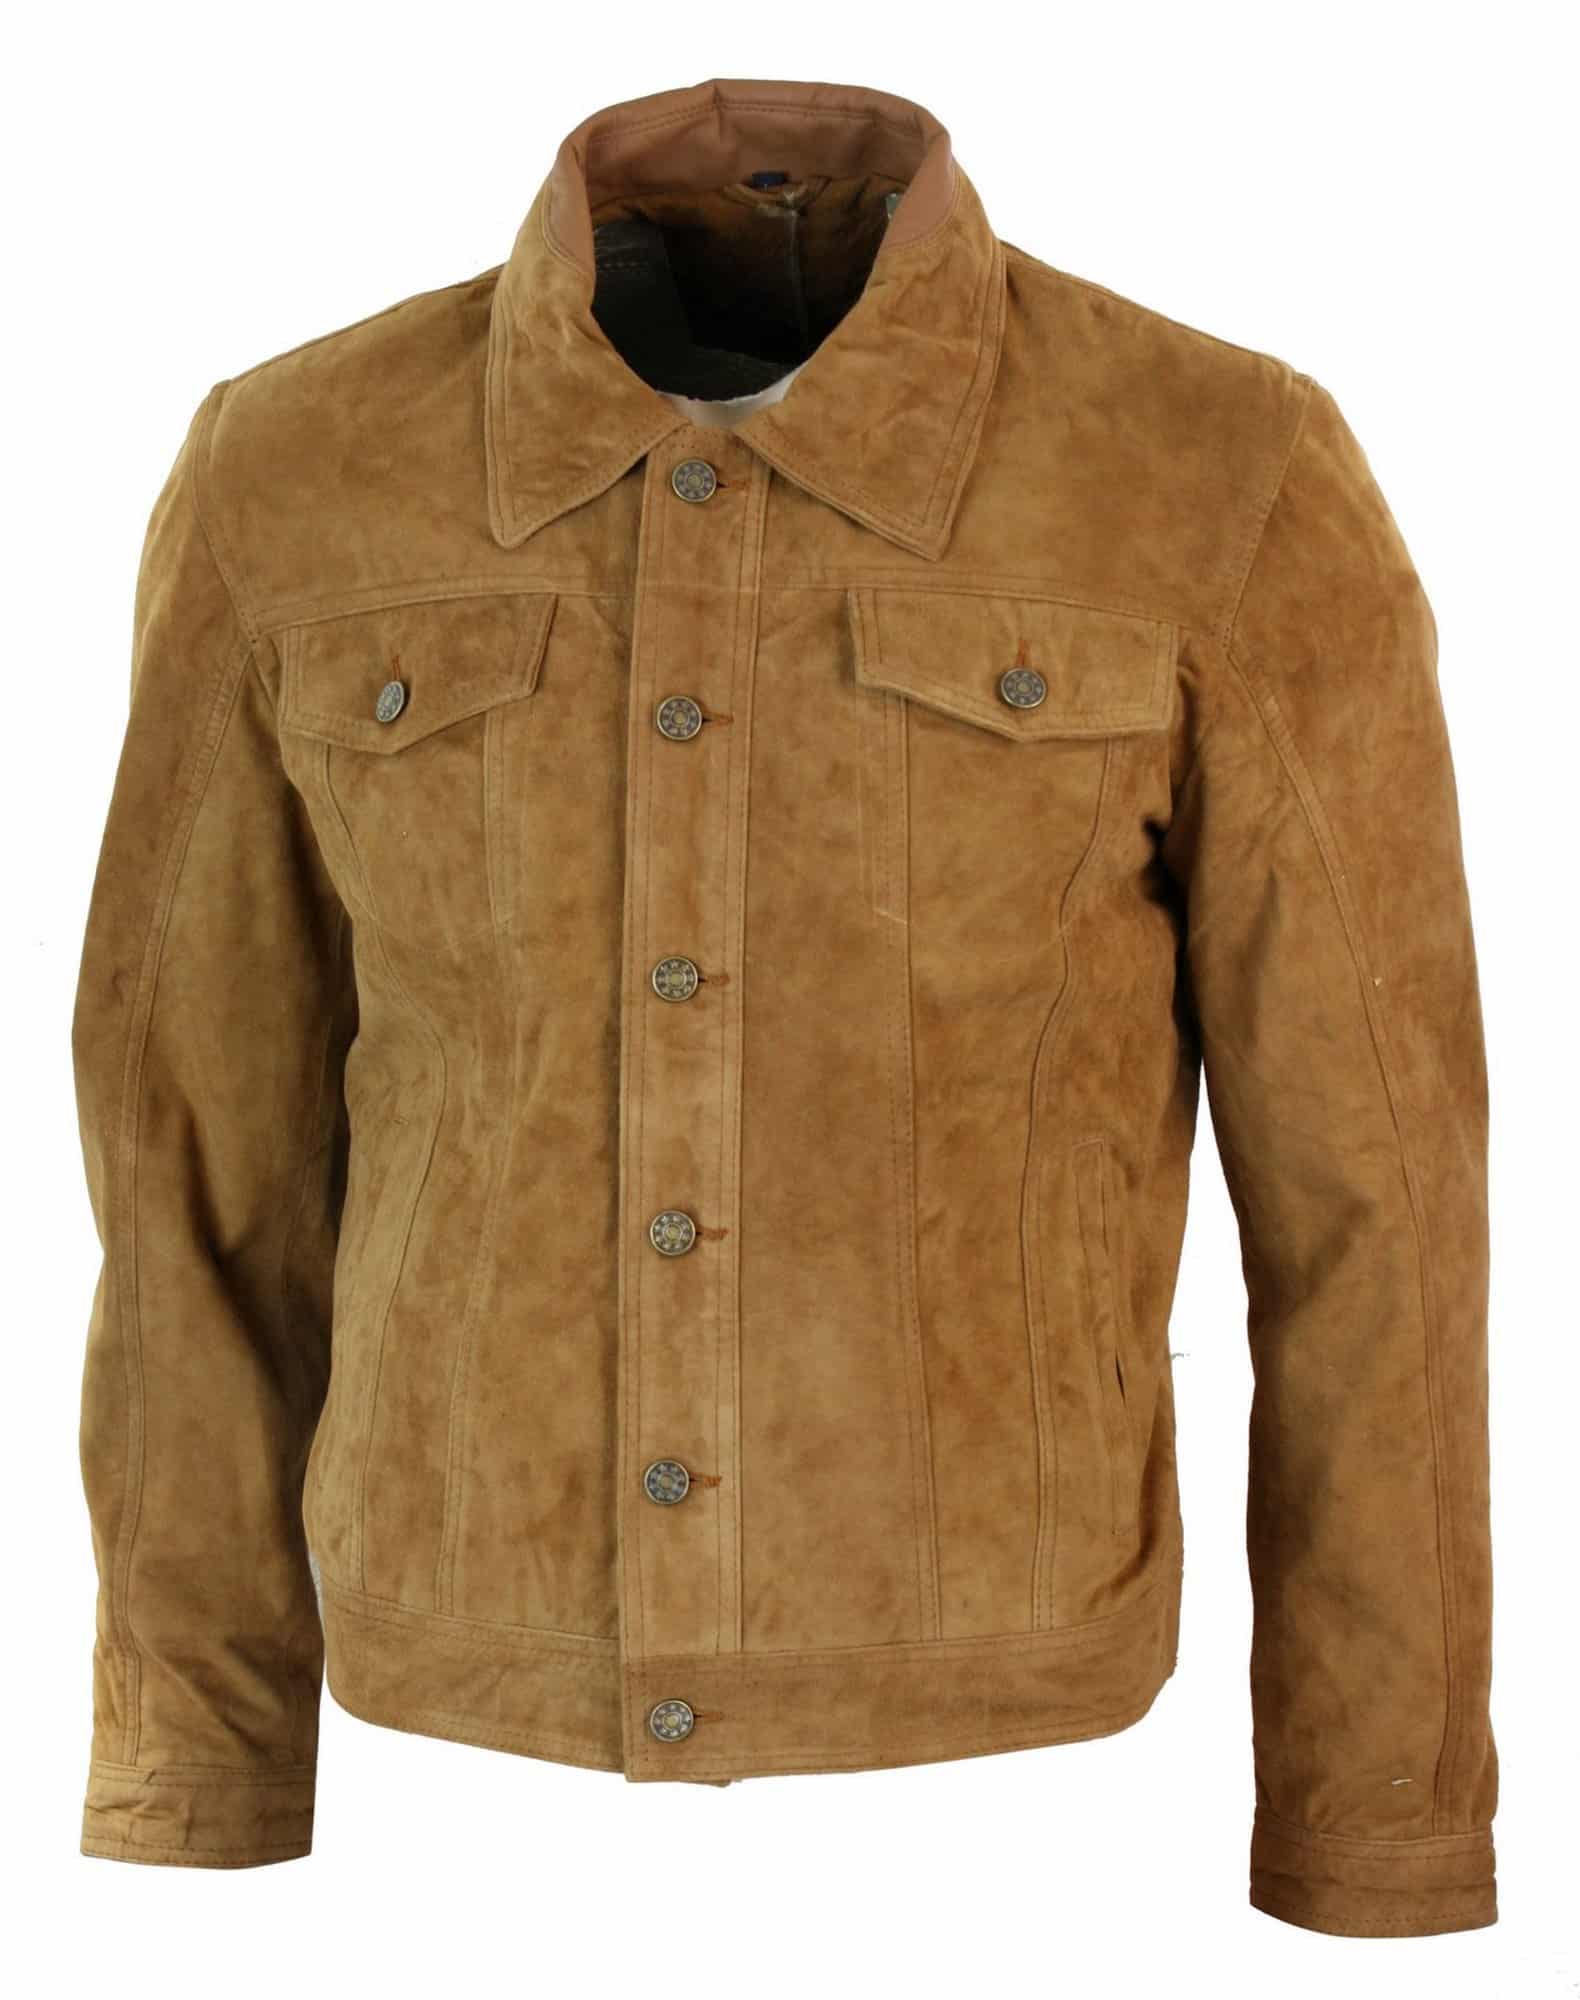 Men's jacket CIPO & BAXX CJ287 BROWN - ENEMIQ.COM